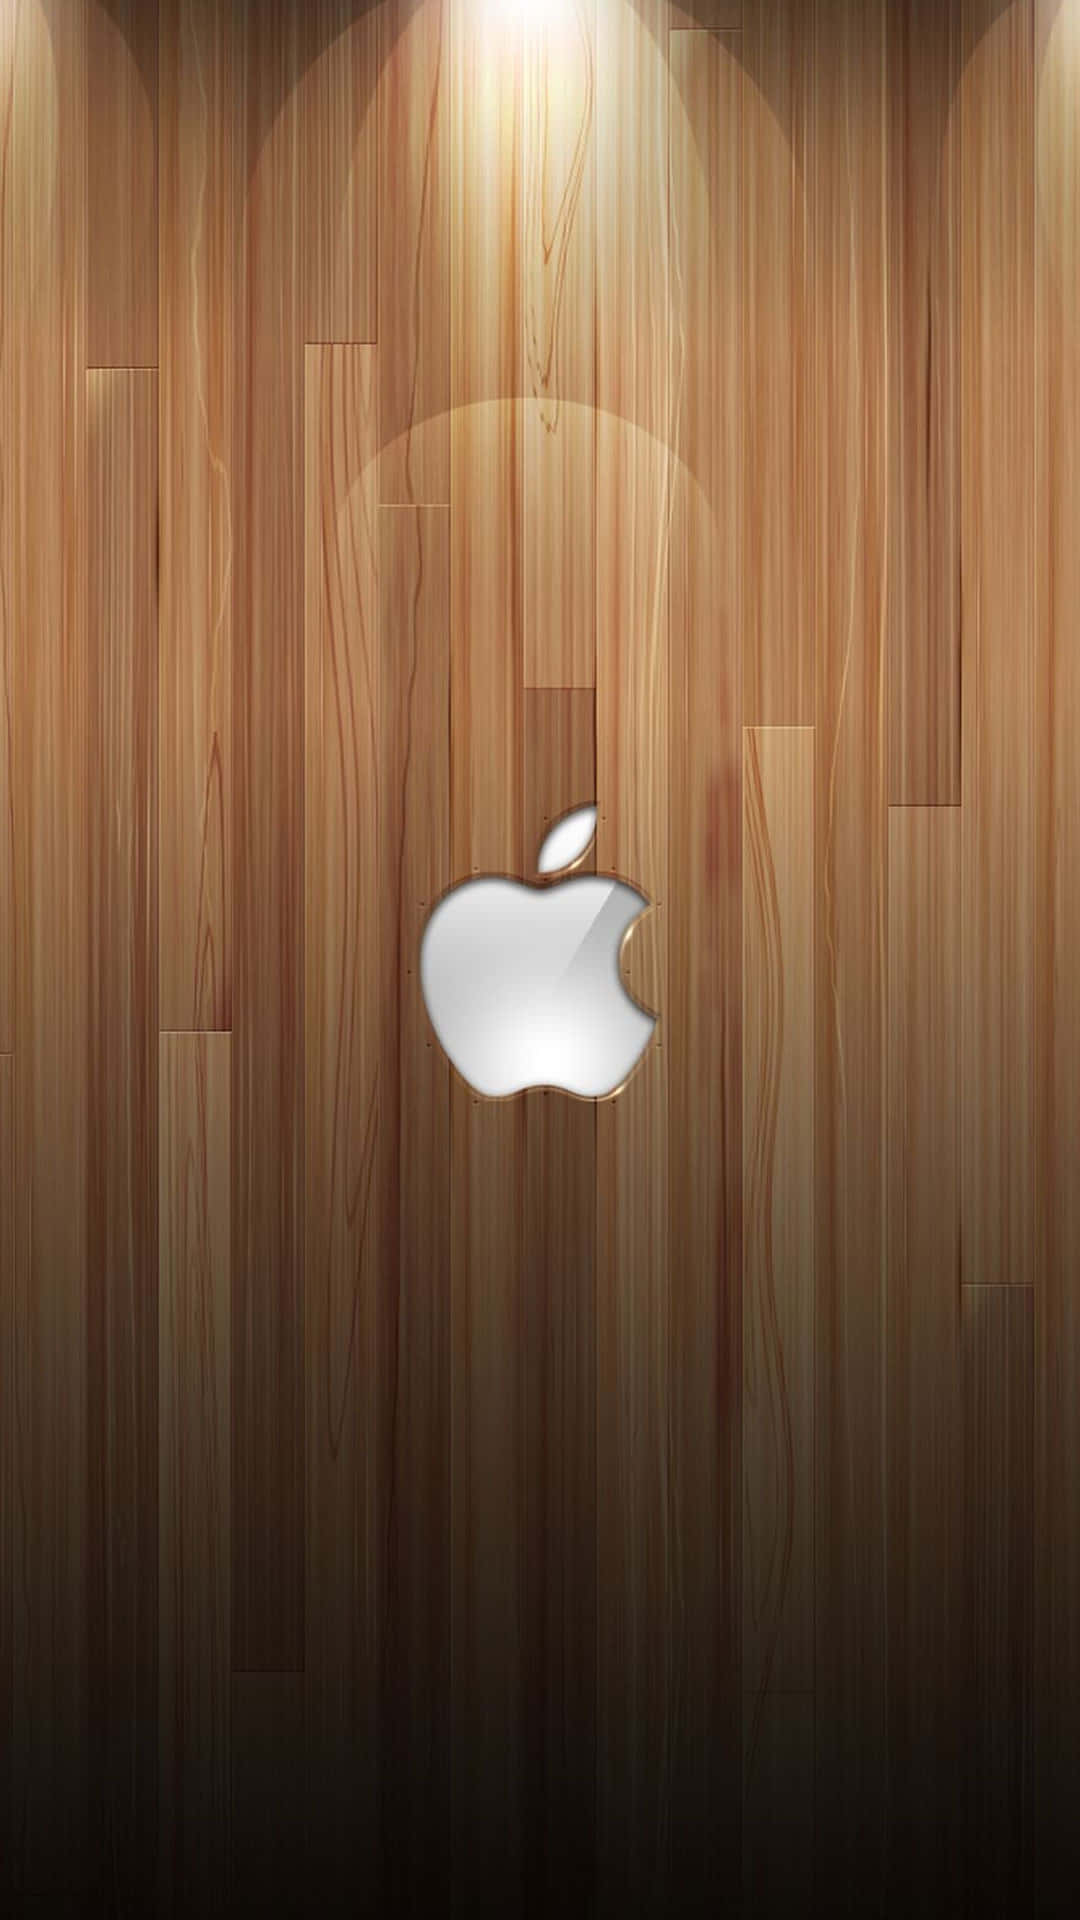 Träigafantastiska Apple Hd-iphone-tapeter. Wallpaper